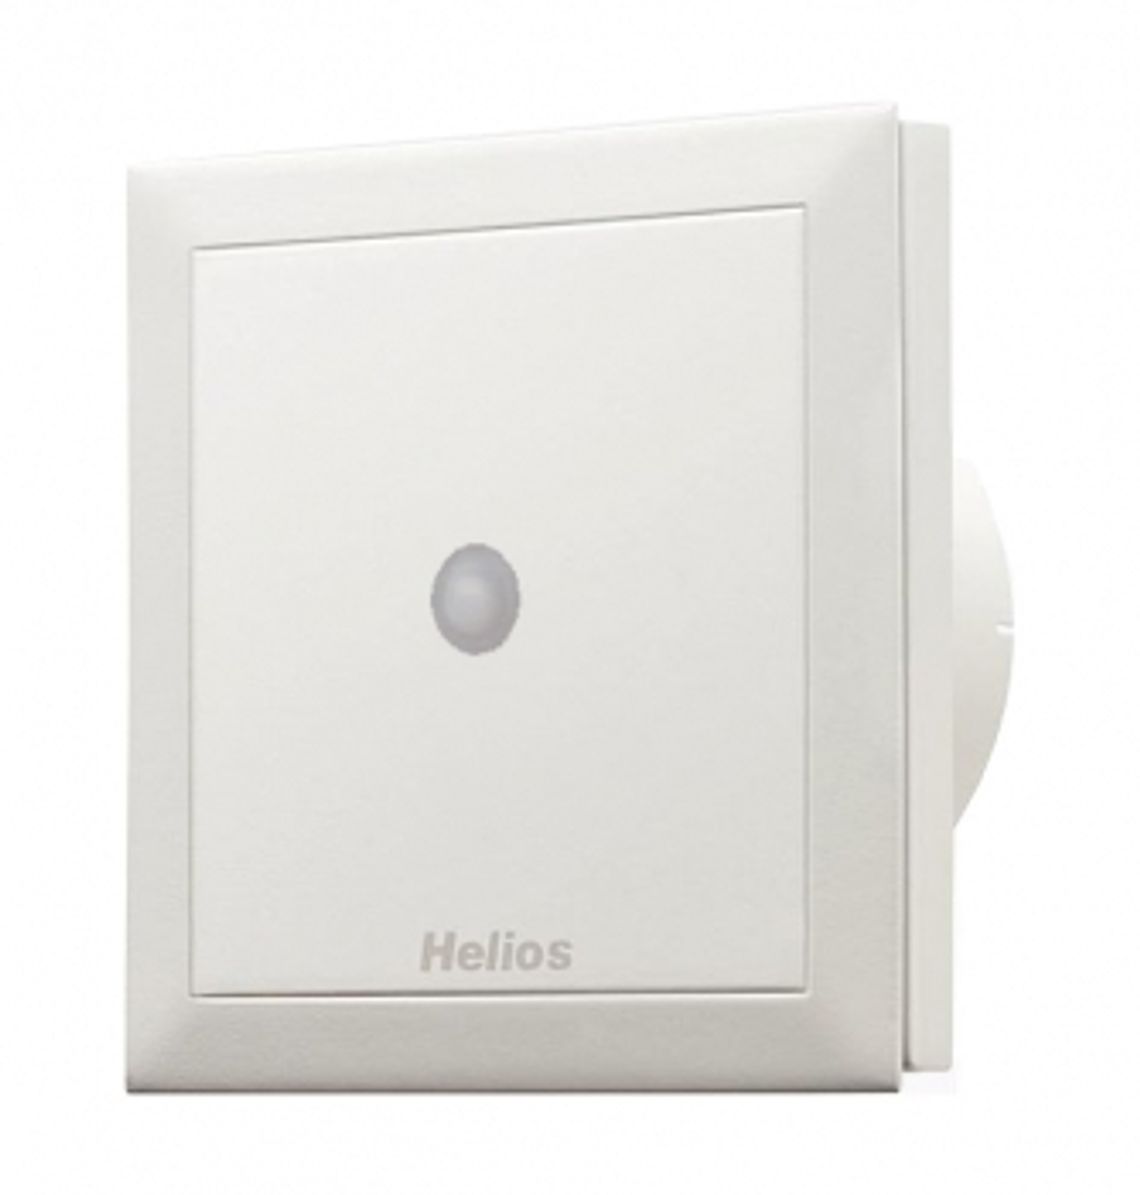 Вытяжной вентилятор Helios m1/100 9 Вт. Helios MINIVENT m1/100. Helios вентилятор вытяжной MINIVENT m1/100 р. Helios MINIVENT m1/100 купить. Вентилятор с датчиком таймером